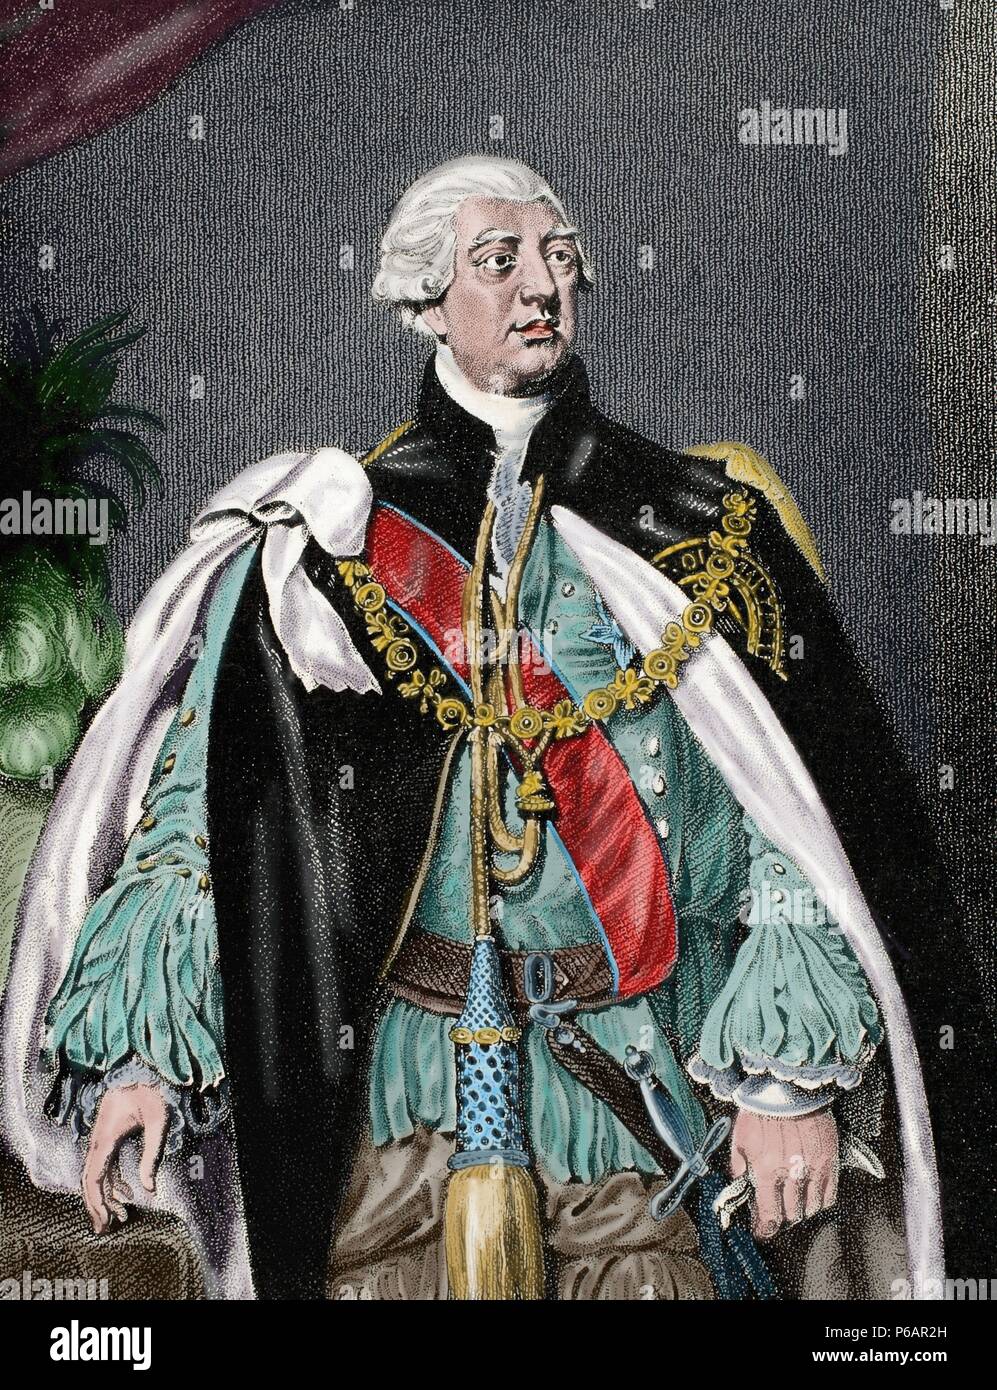 George III (1738-1820). König von Großbritannien und Irland später König des Vereinigten Königreichs und von Hannover. Gravur. Farbige. Stockfoto